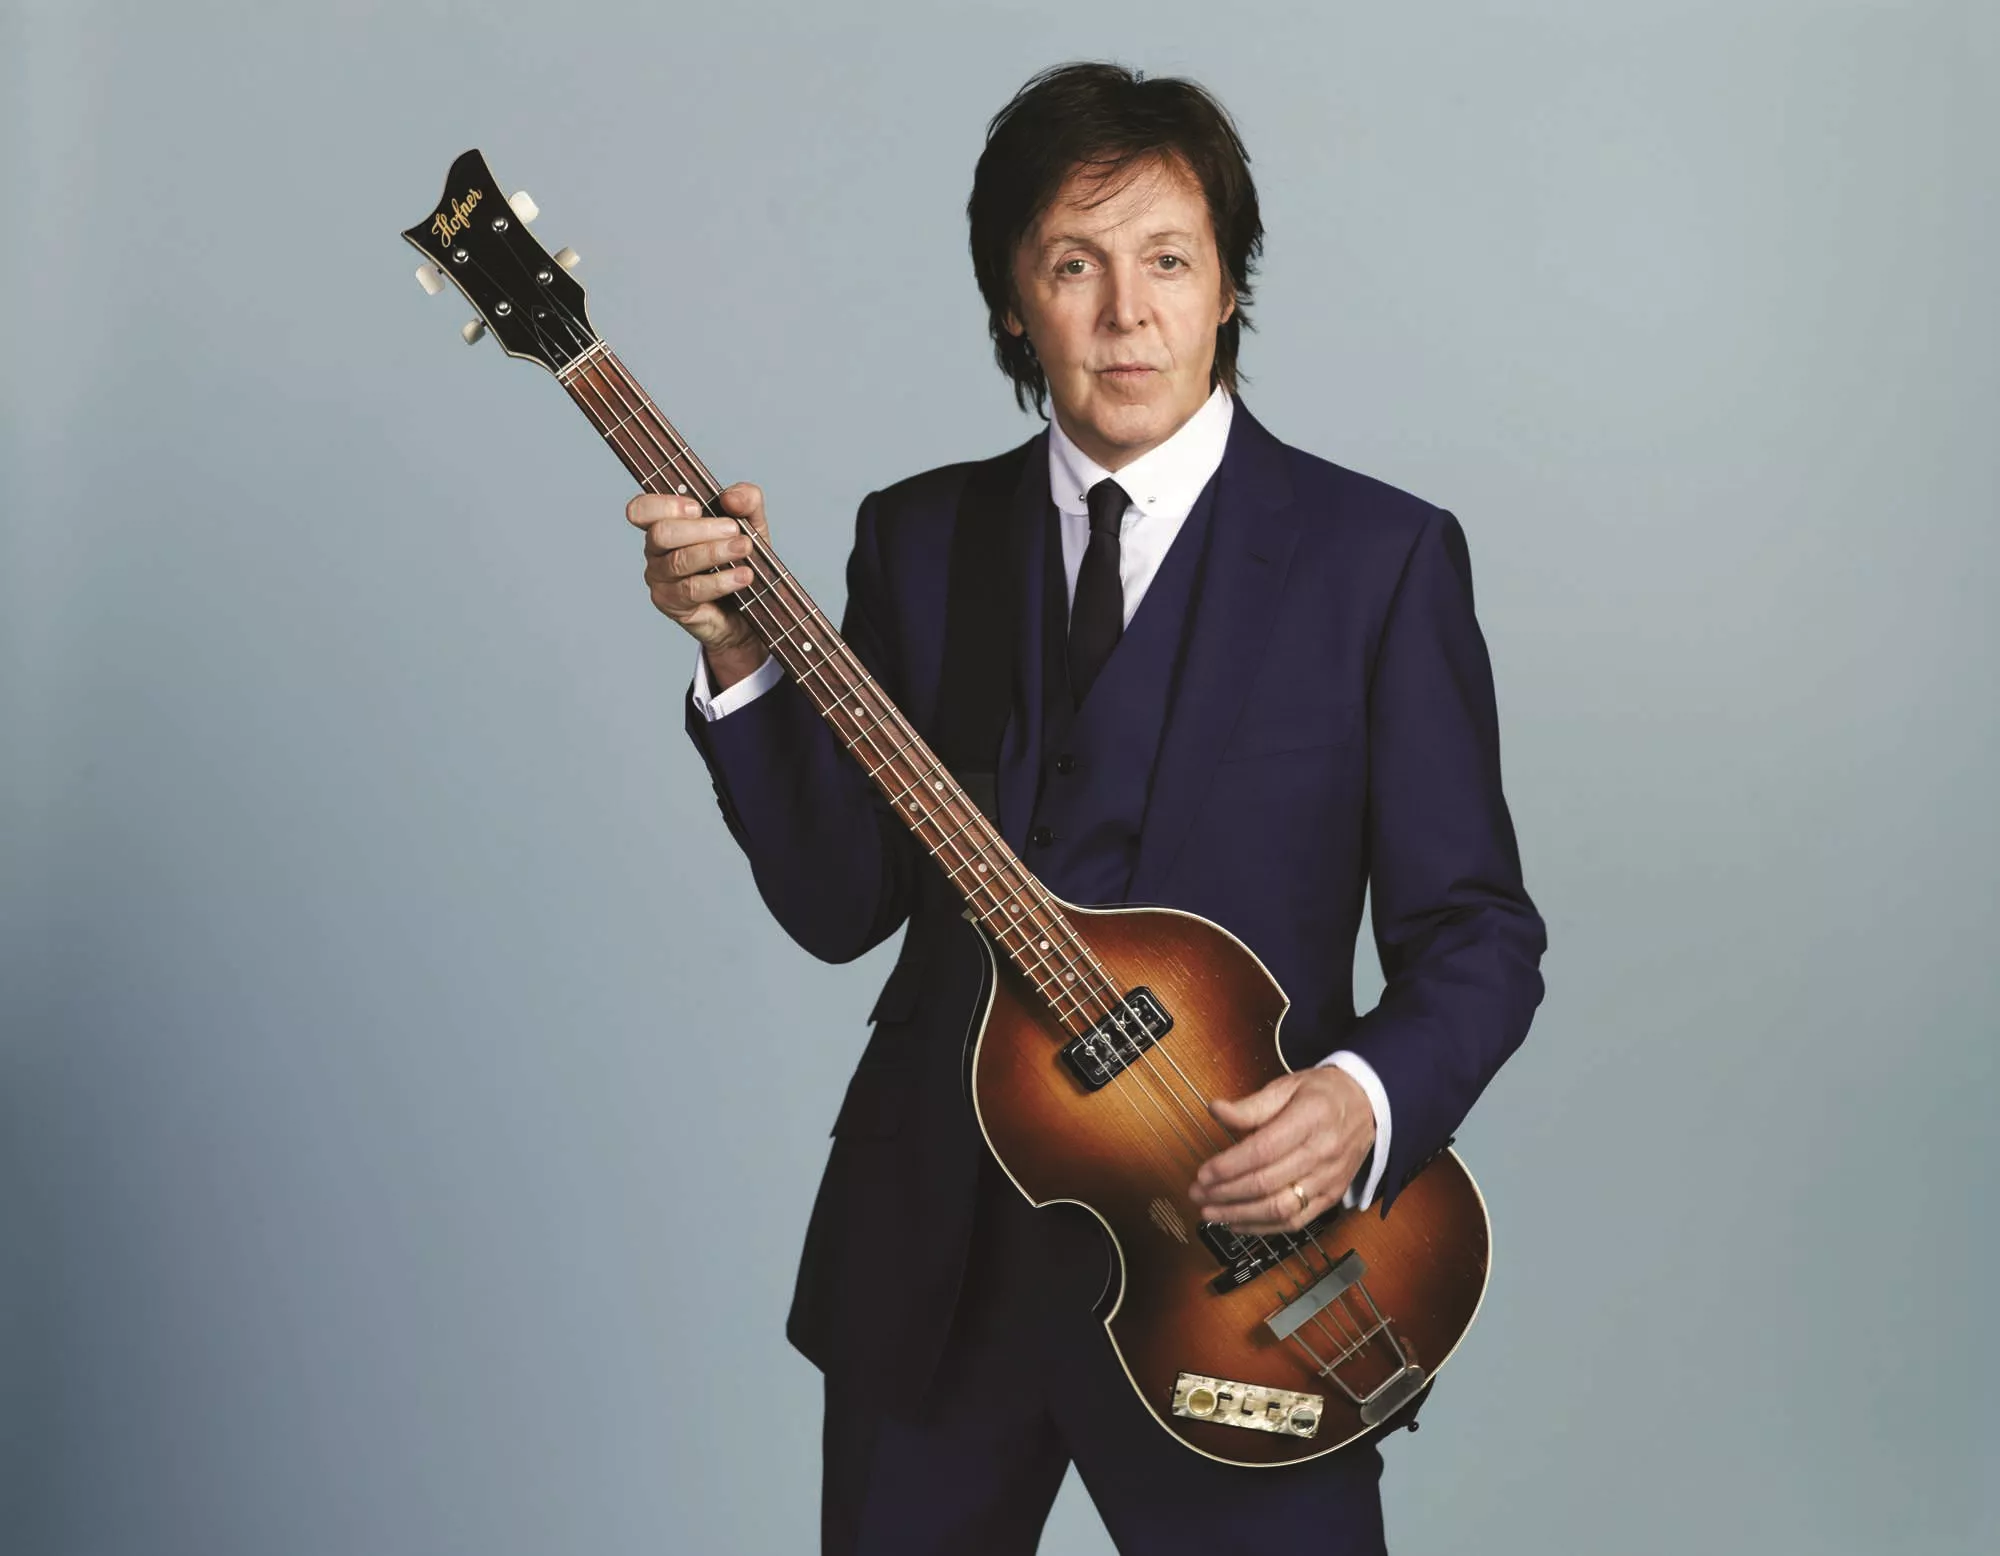 Paul McCartney med ny karriereretning - har blitt en «vlogger»